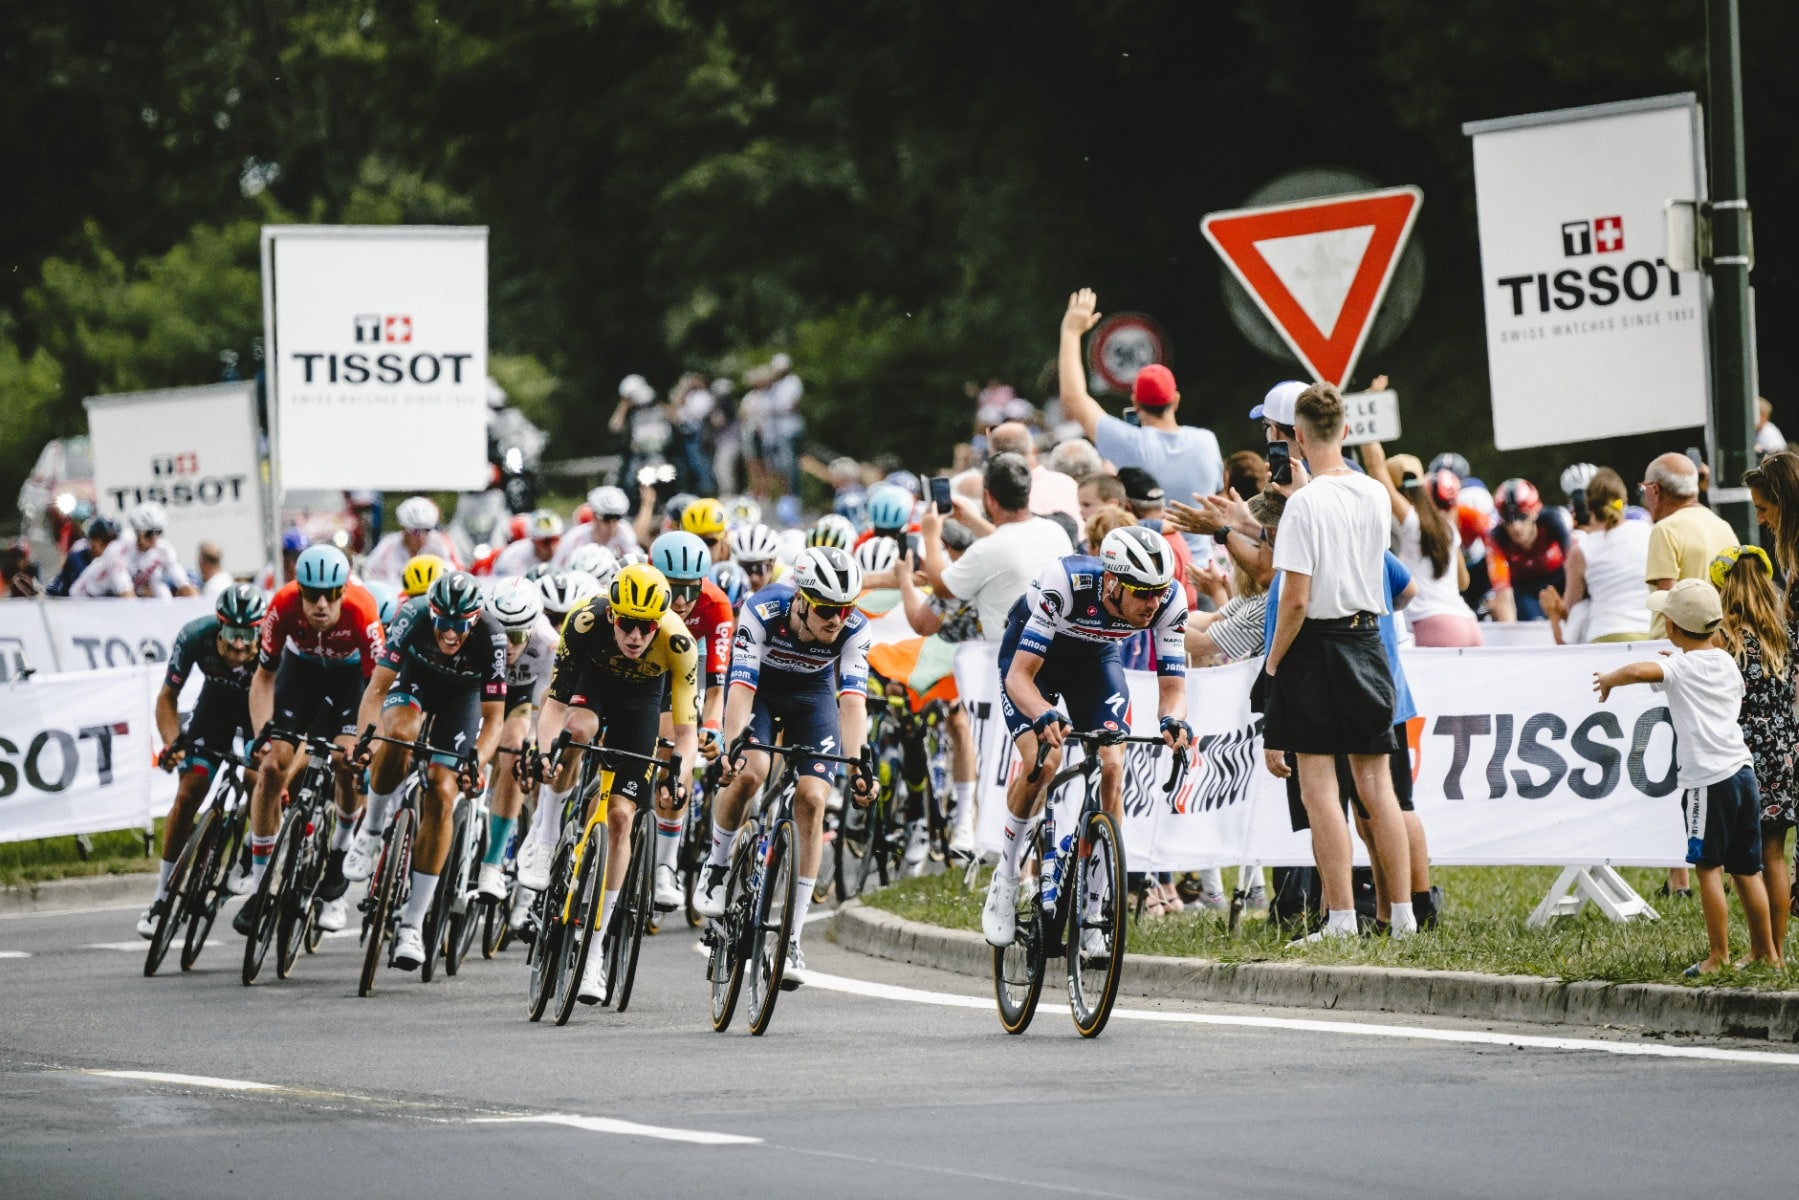 Tissot e o Tour de France: Celebrar um legado de cronometragem e inovação